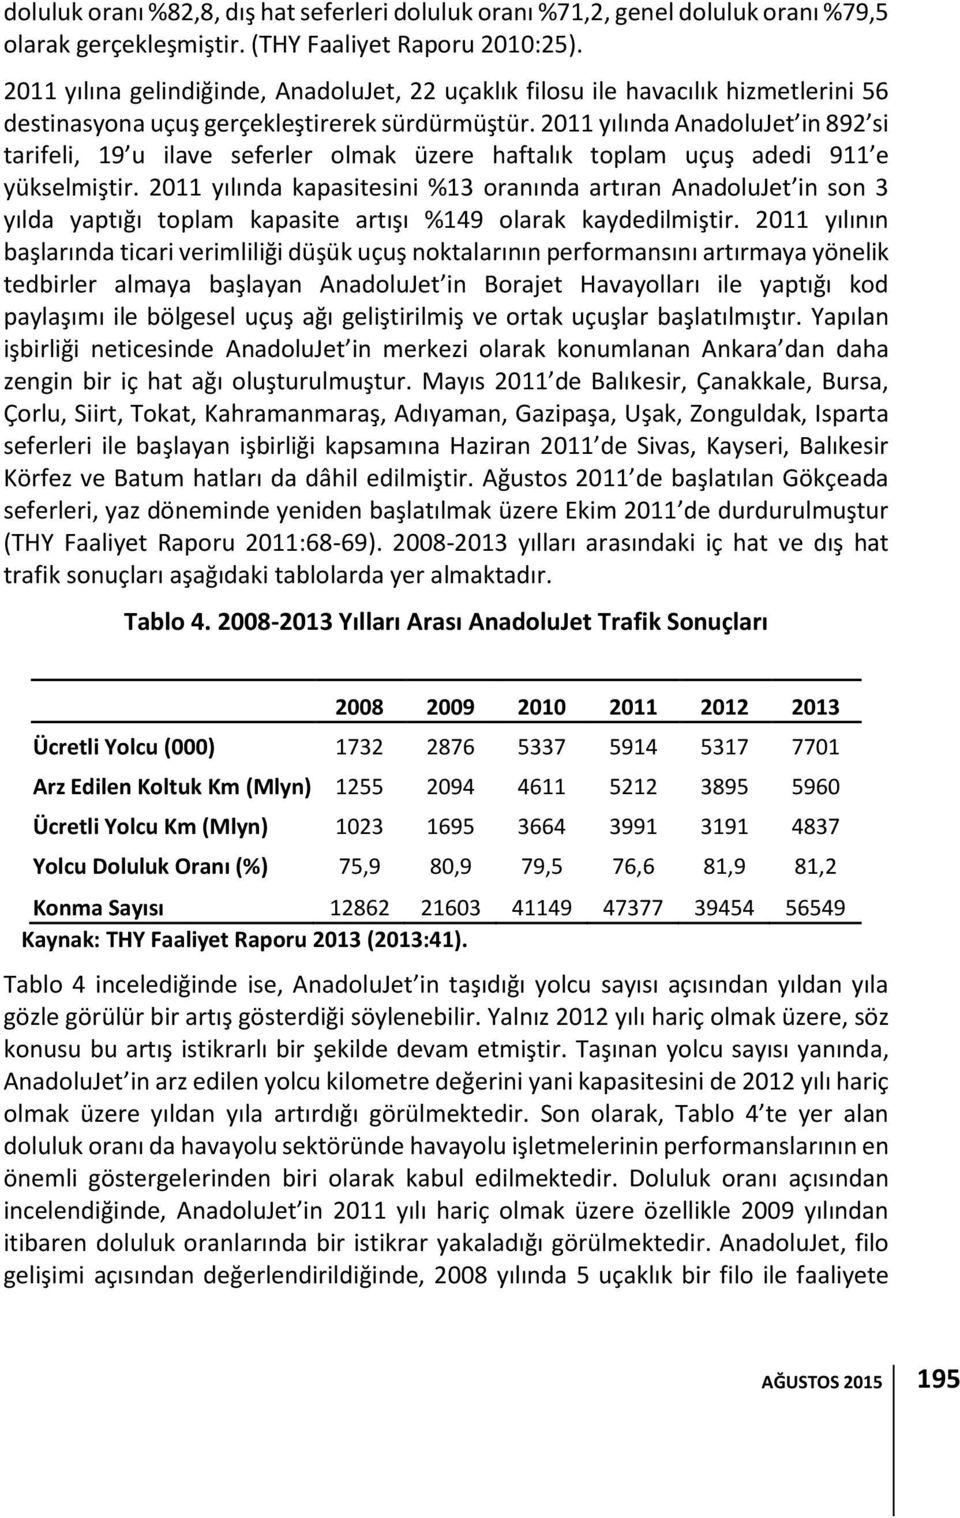 2011 yılında AnadoluJet in 892 si tarifeli, 19 u ilave seferler olmak üzere haftalık toplam uçuş adedi 911 e yükselmiştir.